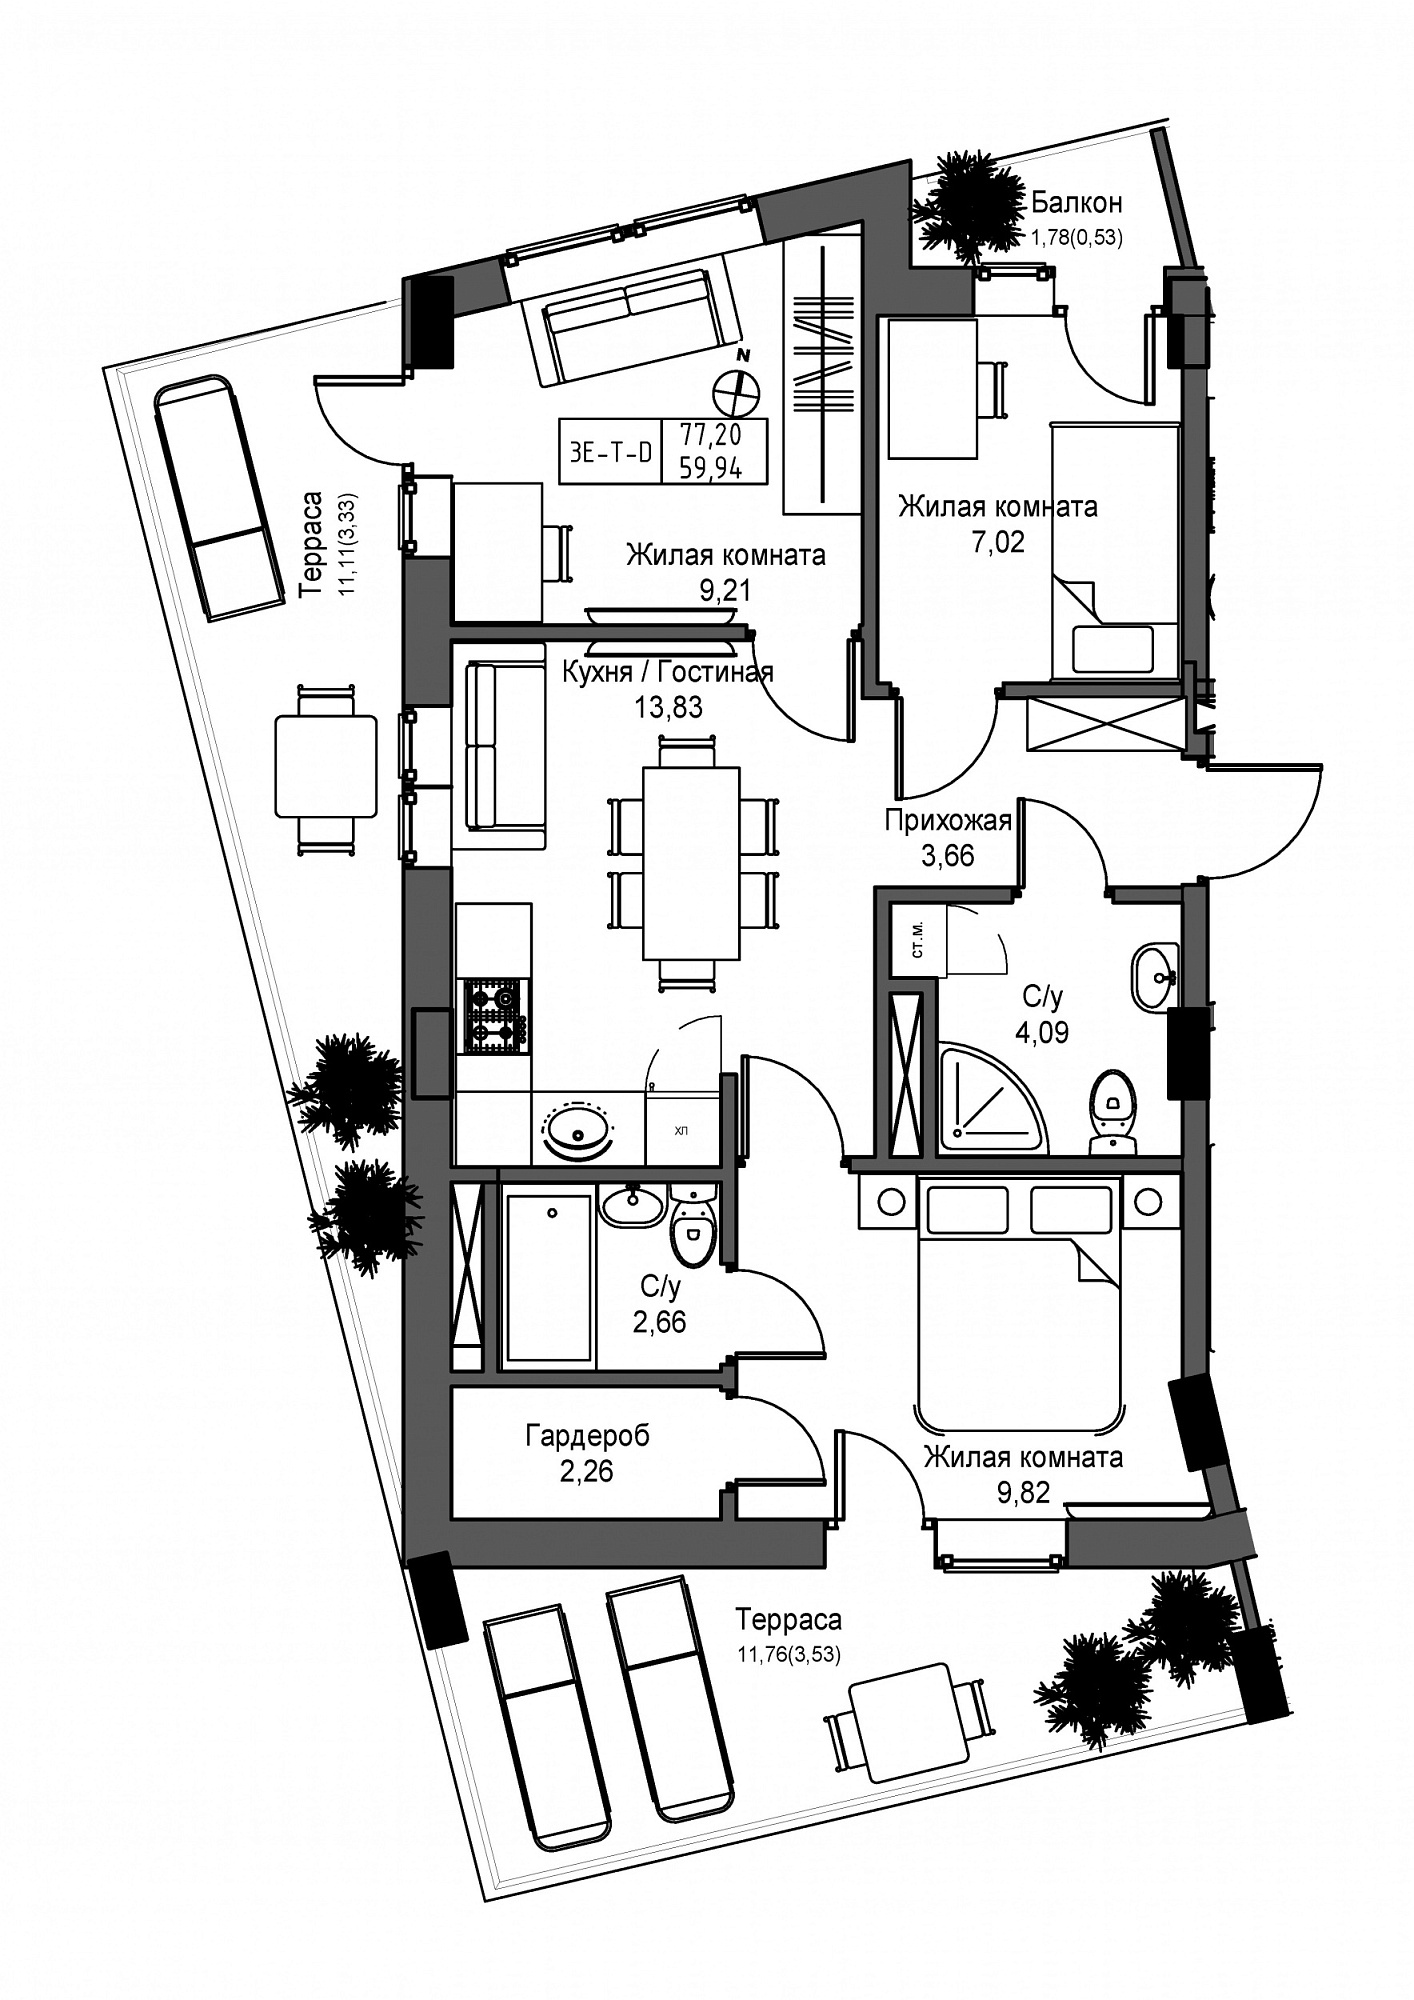 Планировка 3-к квартира площей 59.94м2, UM-004-08/0015.